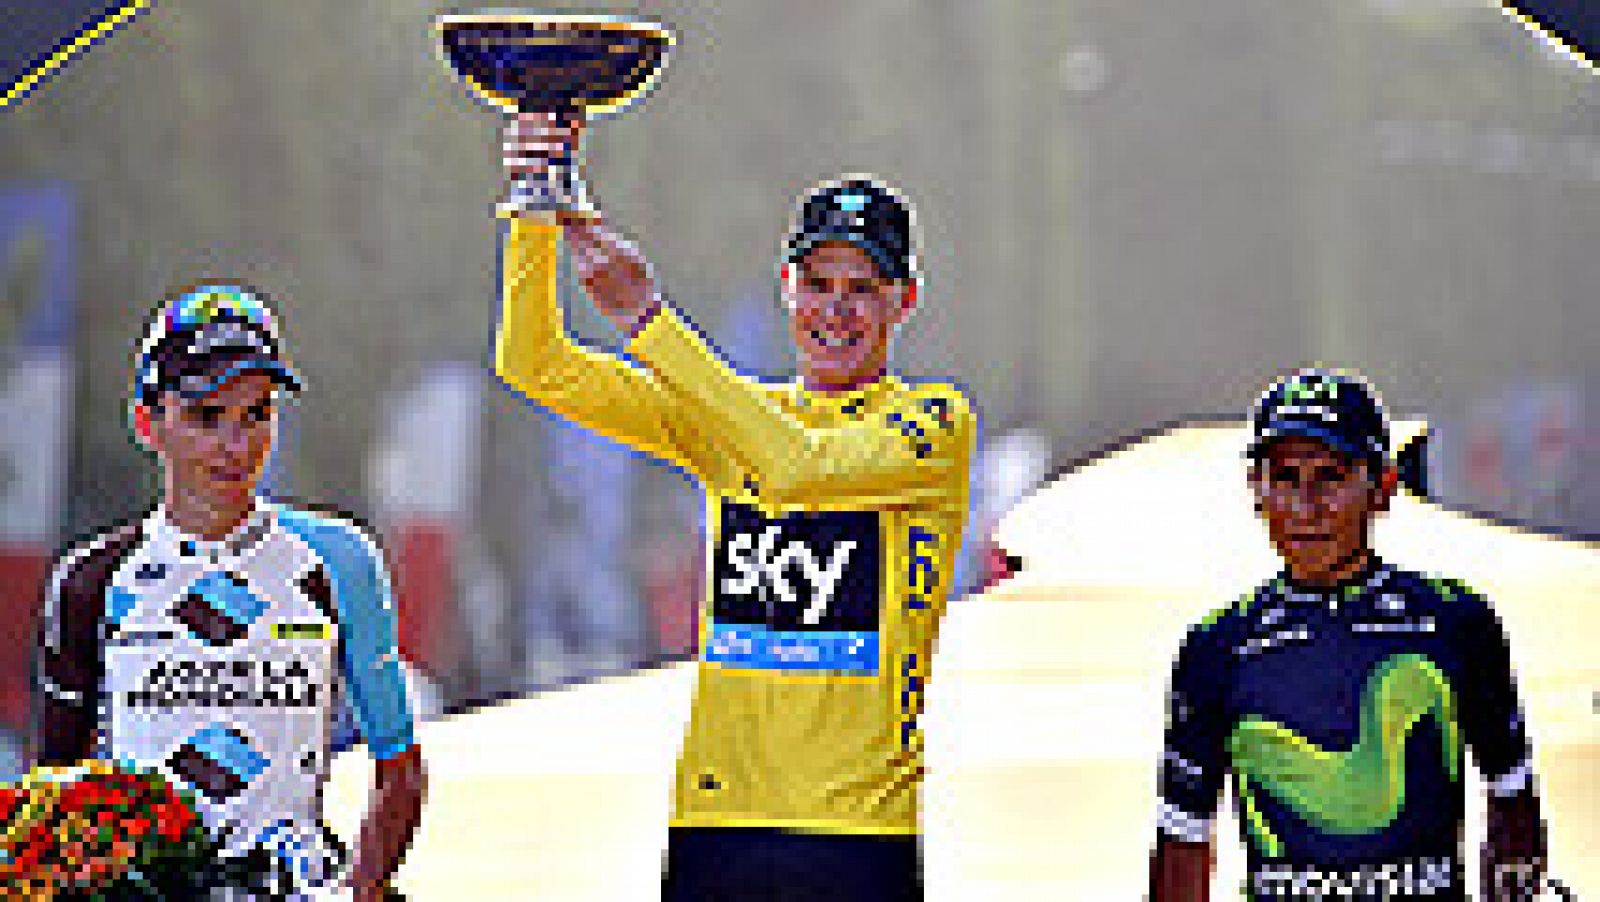 El británico Chris Froome (Sky) entró por tercera vez con el maillot amarillo de vencedor del Tour de Francia en los Campos Elíseos de París, donde el alemán André Greipel (Lotto Soudal) se sumó a la fiesta como ganador al esprint de la última etapa,